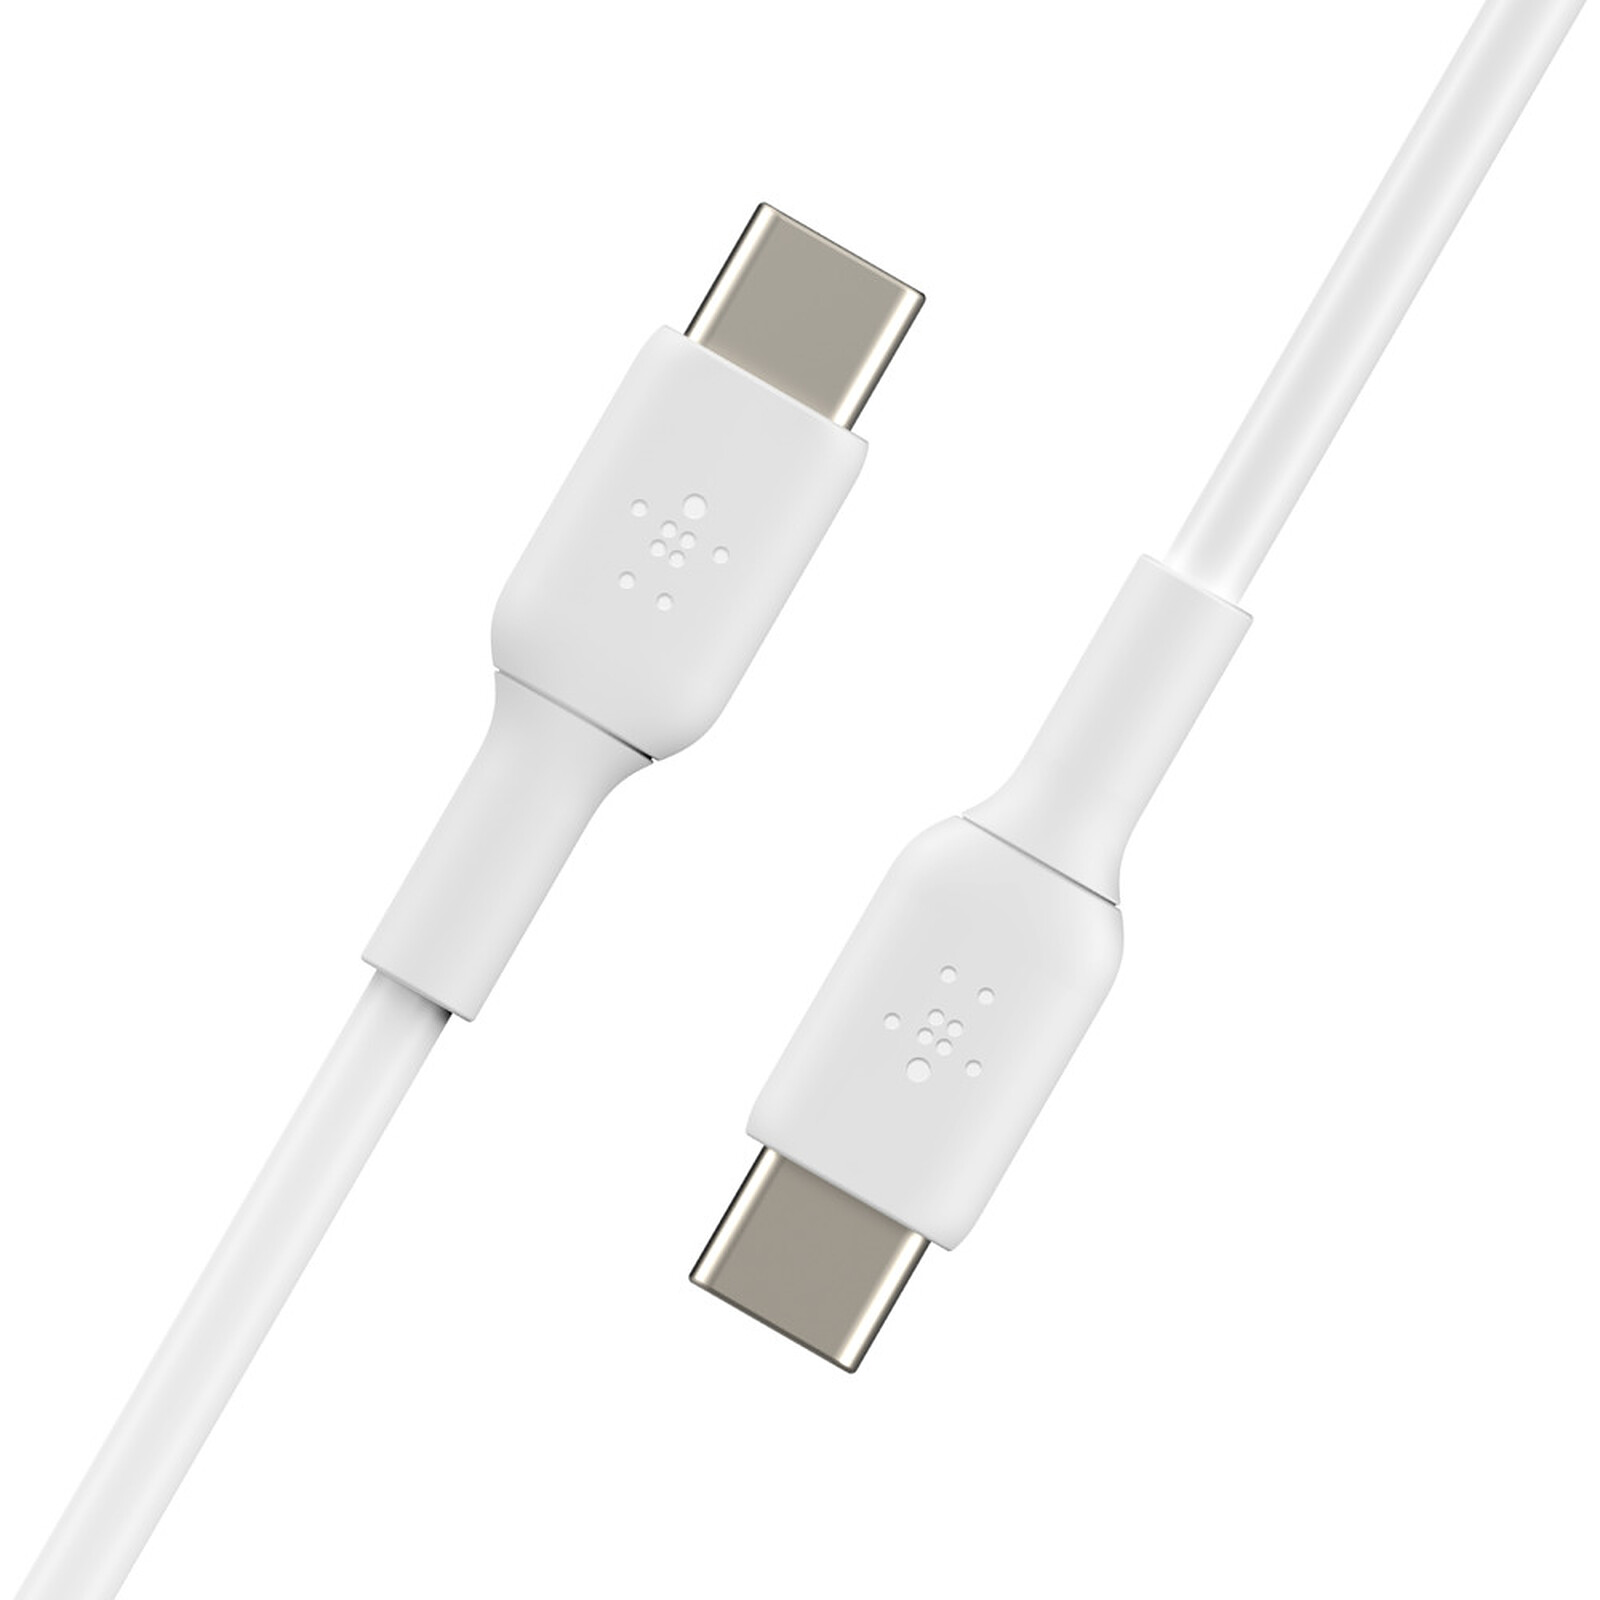 Belkin Câble de recharge USB-C vers USB-C Boost Charge câble USB Type-C pour Samsung, Pixel, iPad Pro, etc. ; 1 m, noir